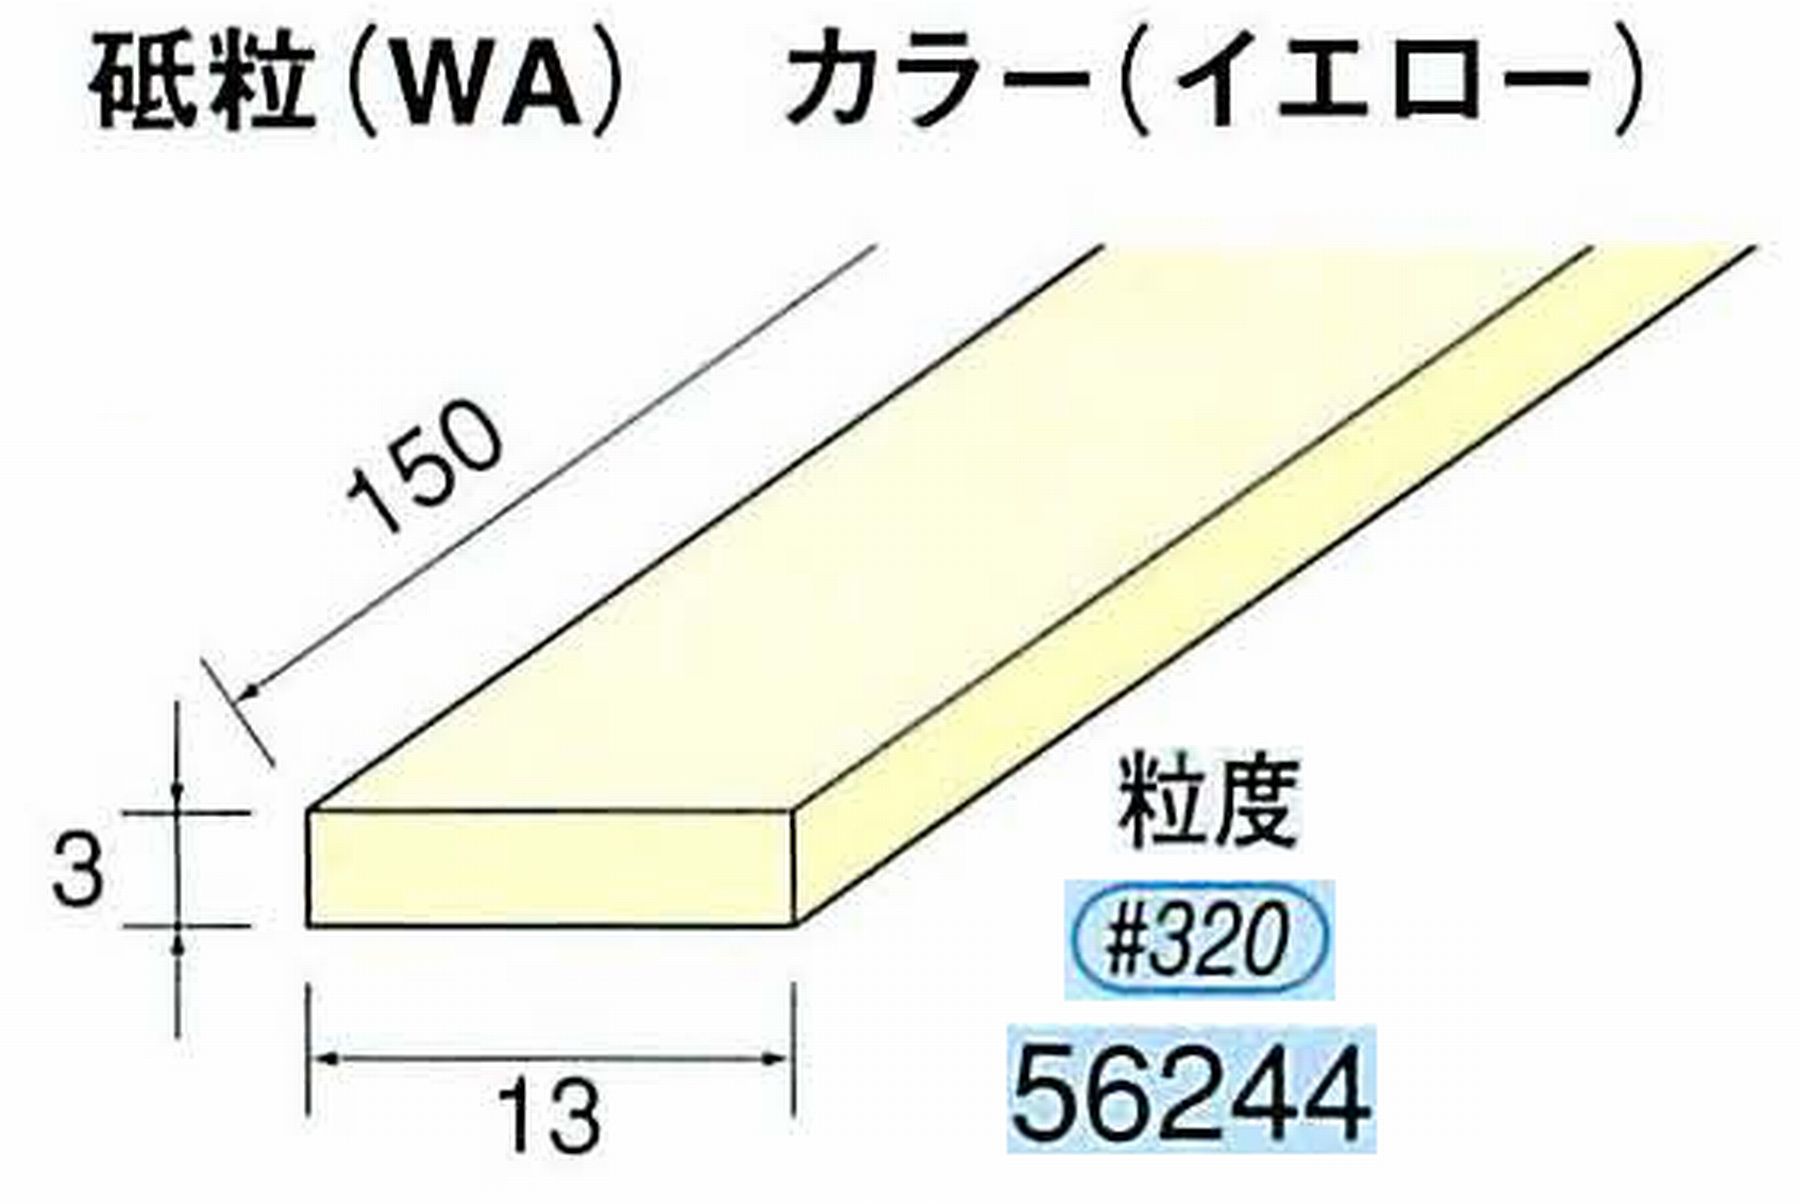 ナカニシ/NAKANISHI スティック砥石 イエロー・フィニッシュシリーズ 砥粒(WA) 56244